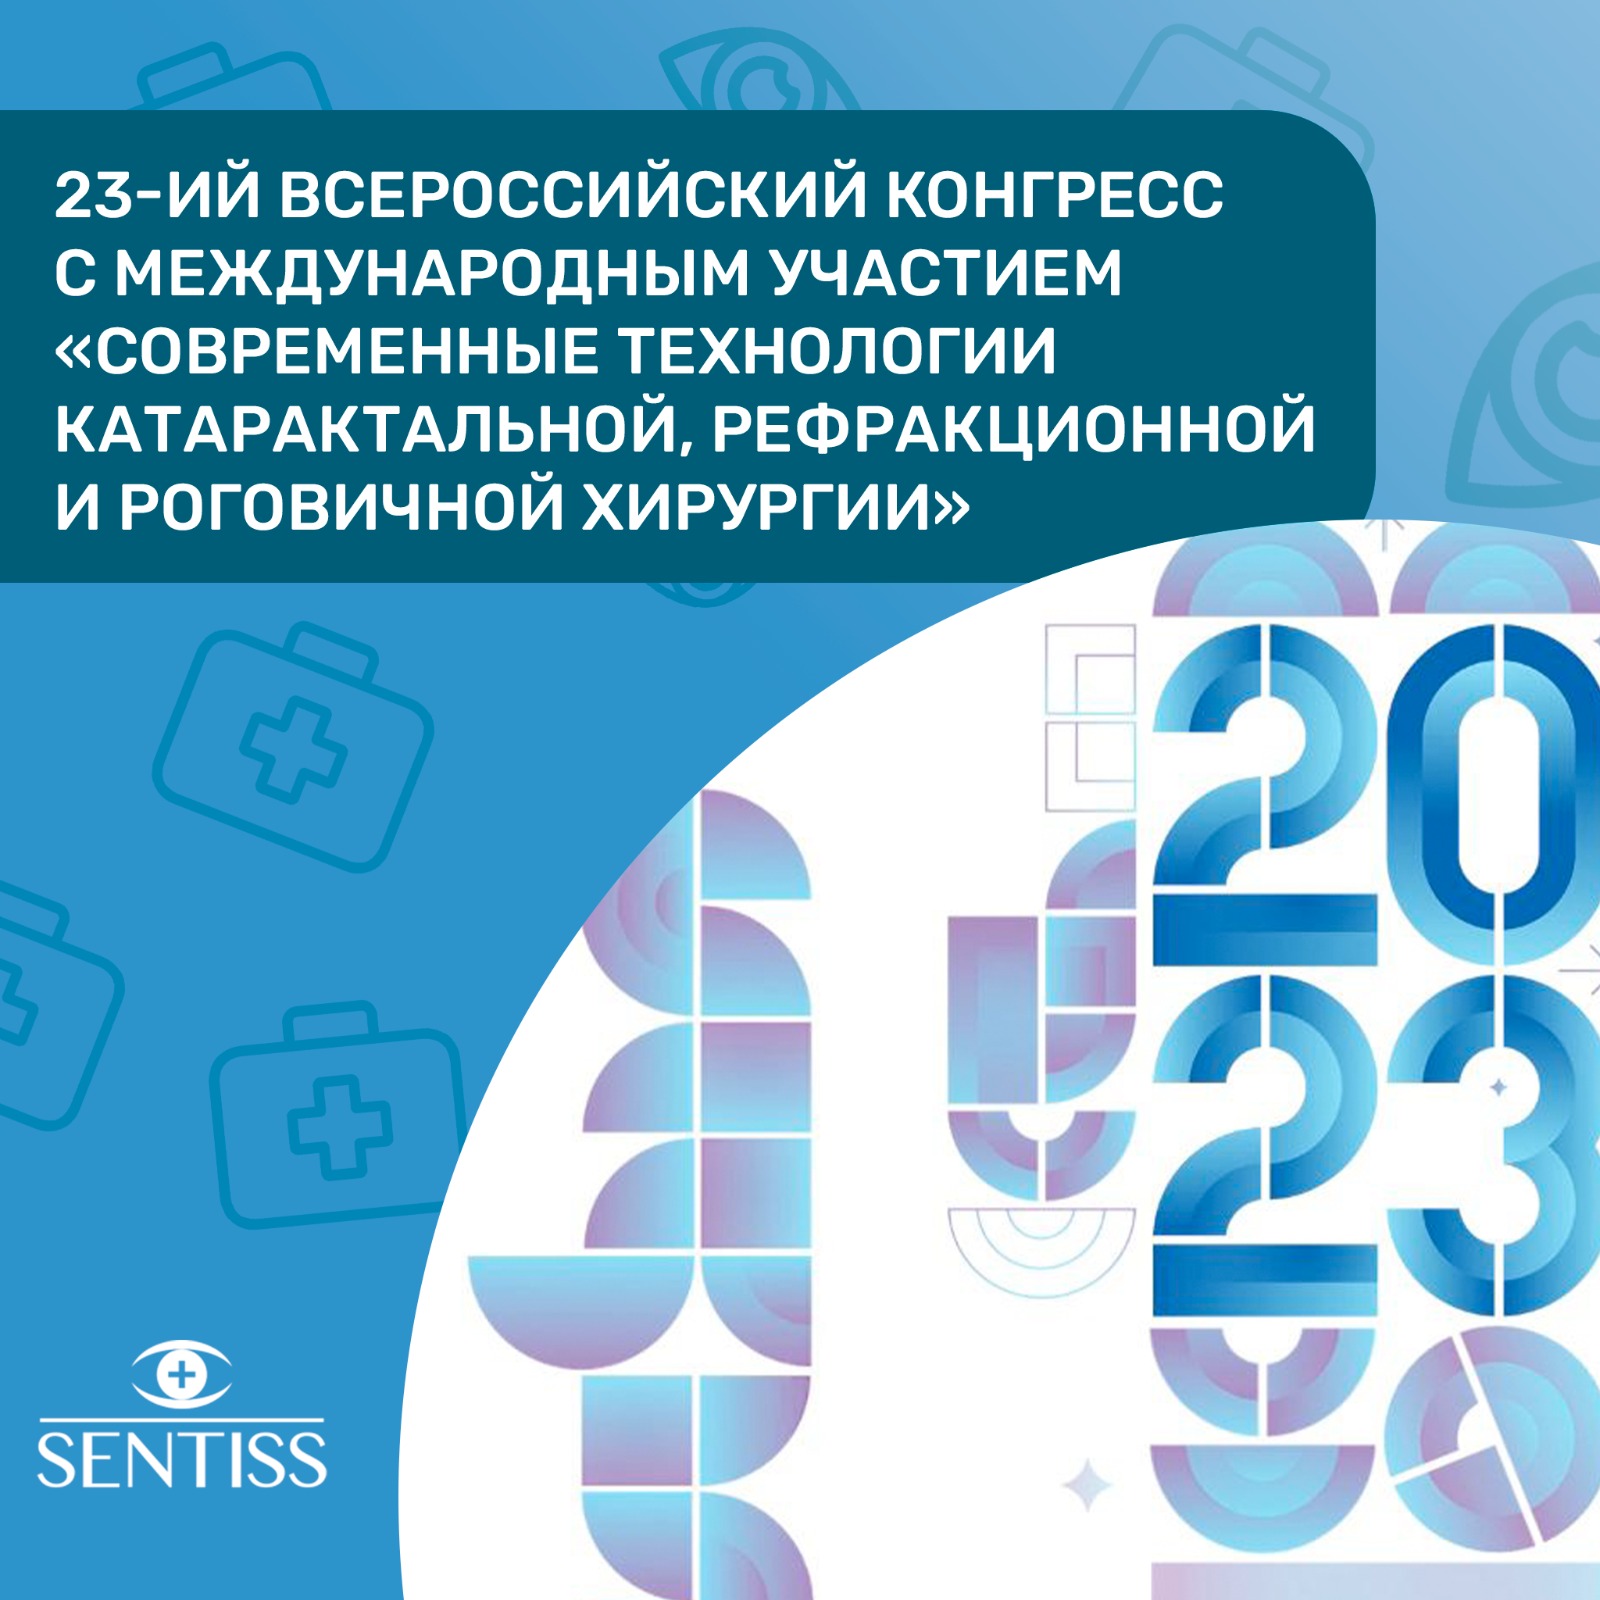 23 Всероссийский конгресс «Современные технологии катарактальной, рефракционной и роговичной хирургии»